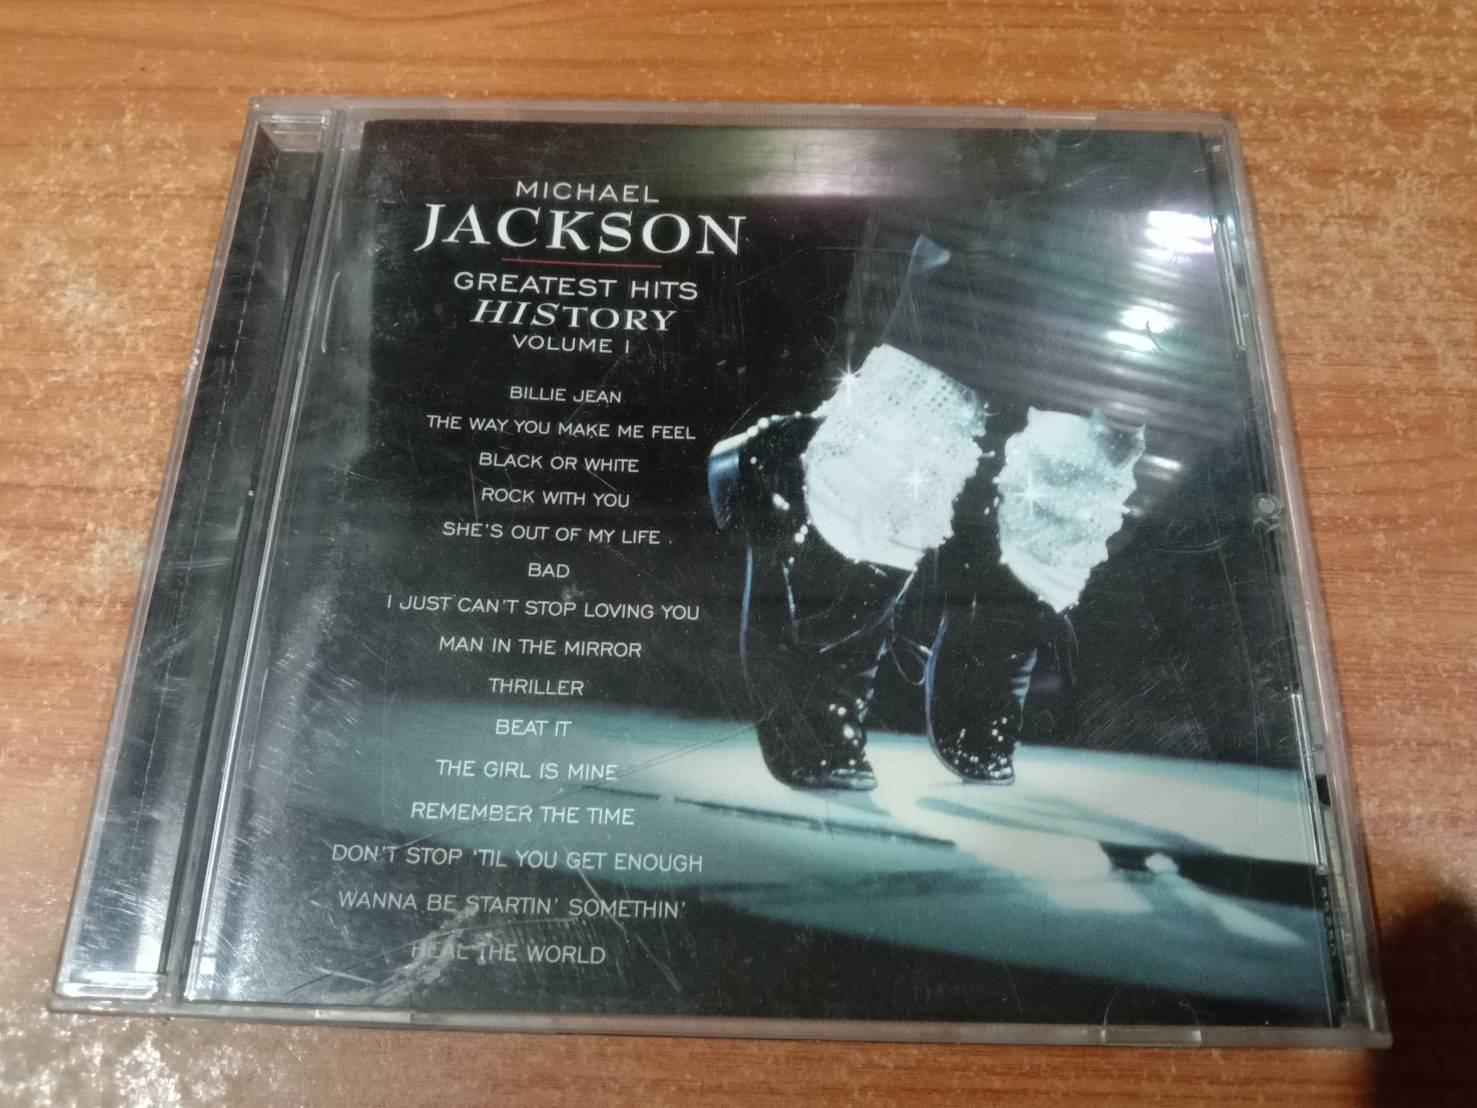 ซีดีเพลง CD ซีดีเพลงสากล Michael Lackson Greatest Hits Hitstory Volume 1***โปรดอ่านรายละเอียดก่อนทำการสั่งซื้อ****